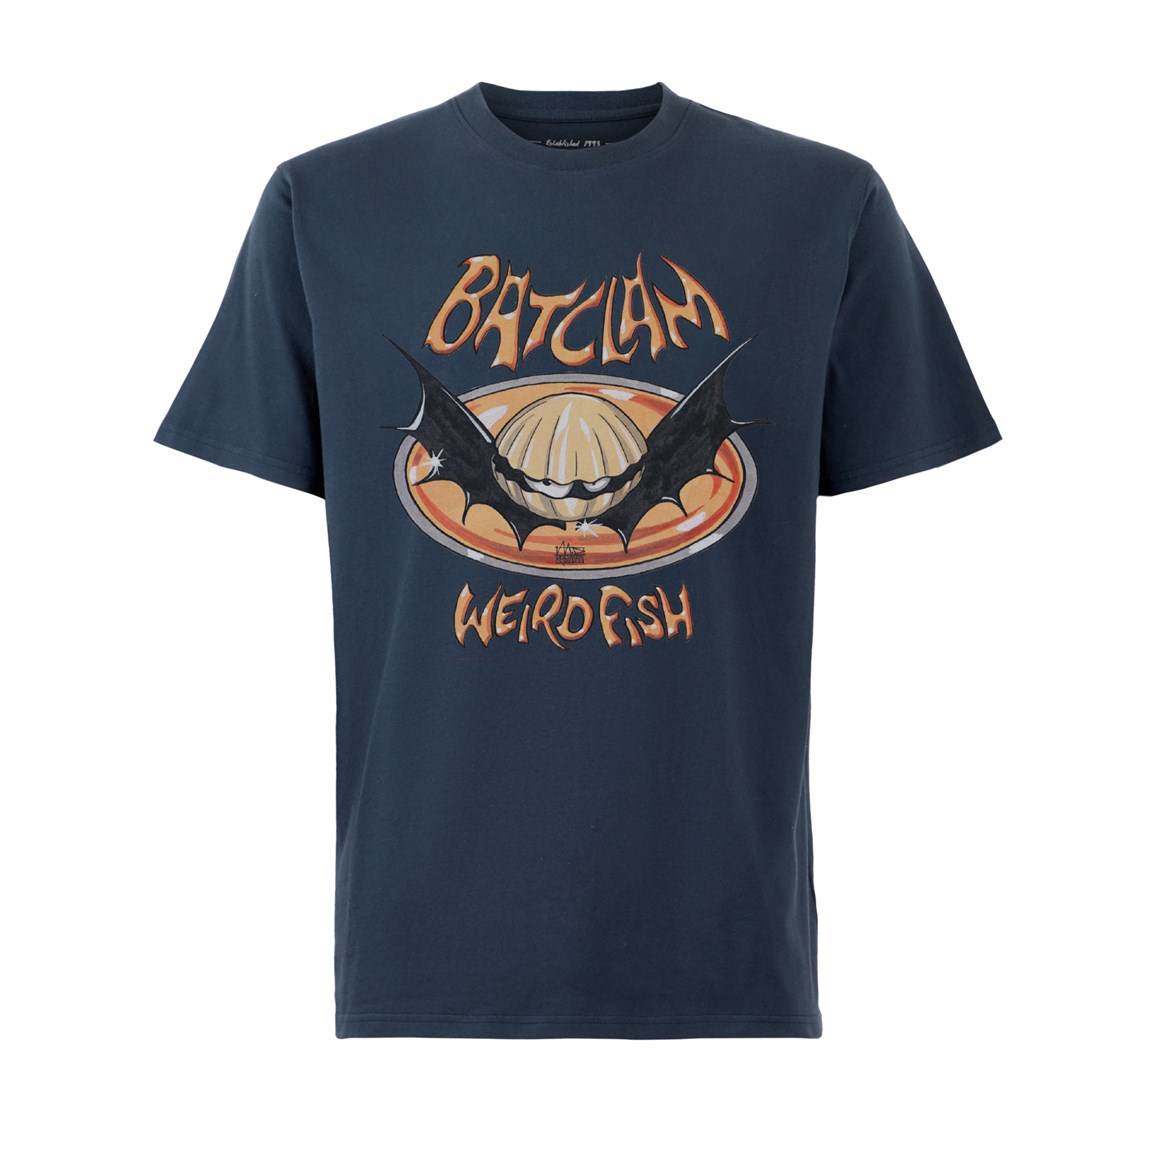 Weird Fish Batclam Organic Cotton Artist T-Shirt Navy Size XL